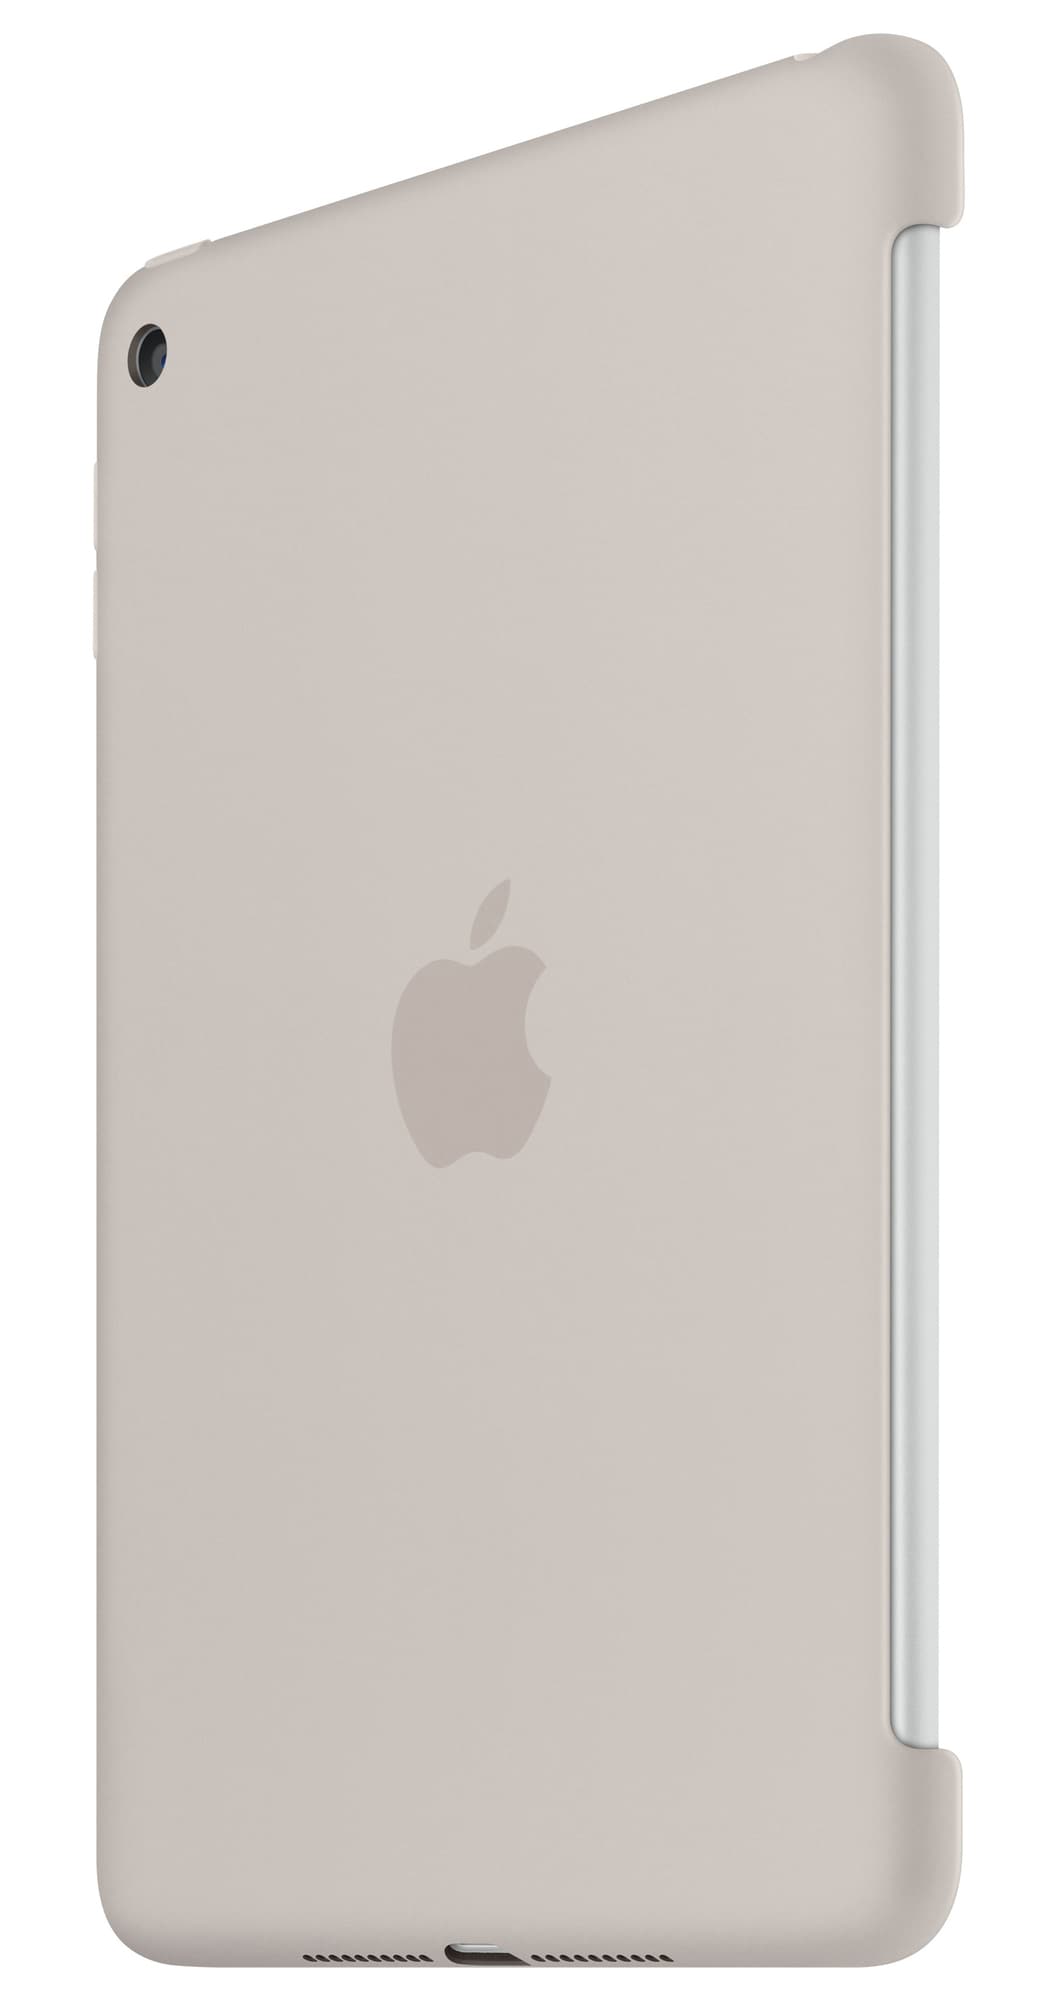 iPad mini 4 silikoneetui - stone grey - iPad og tablet tilbehør - Elgiganten